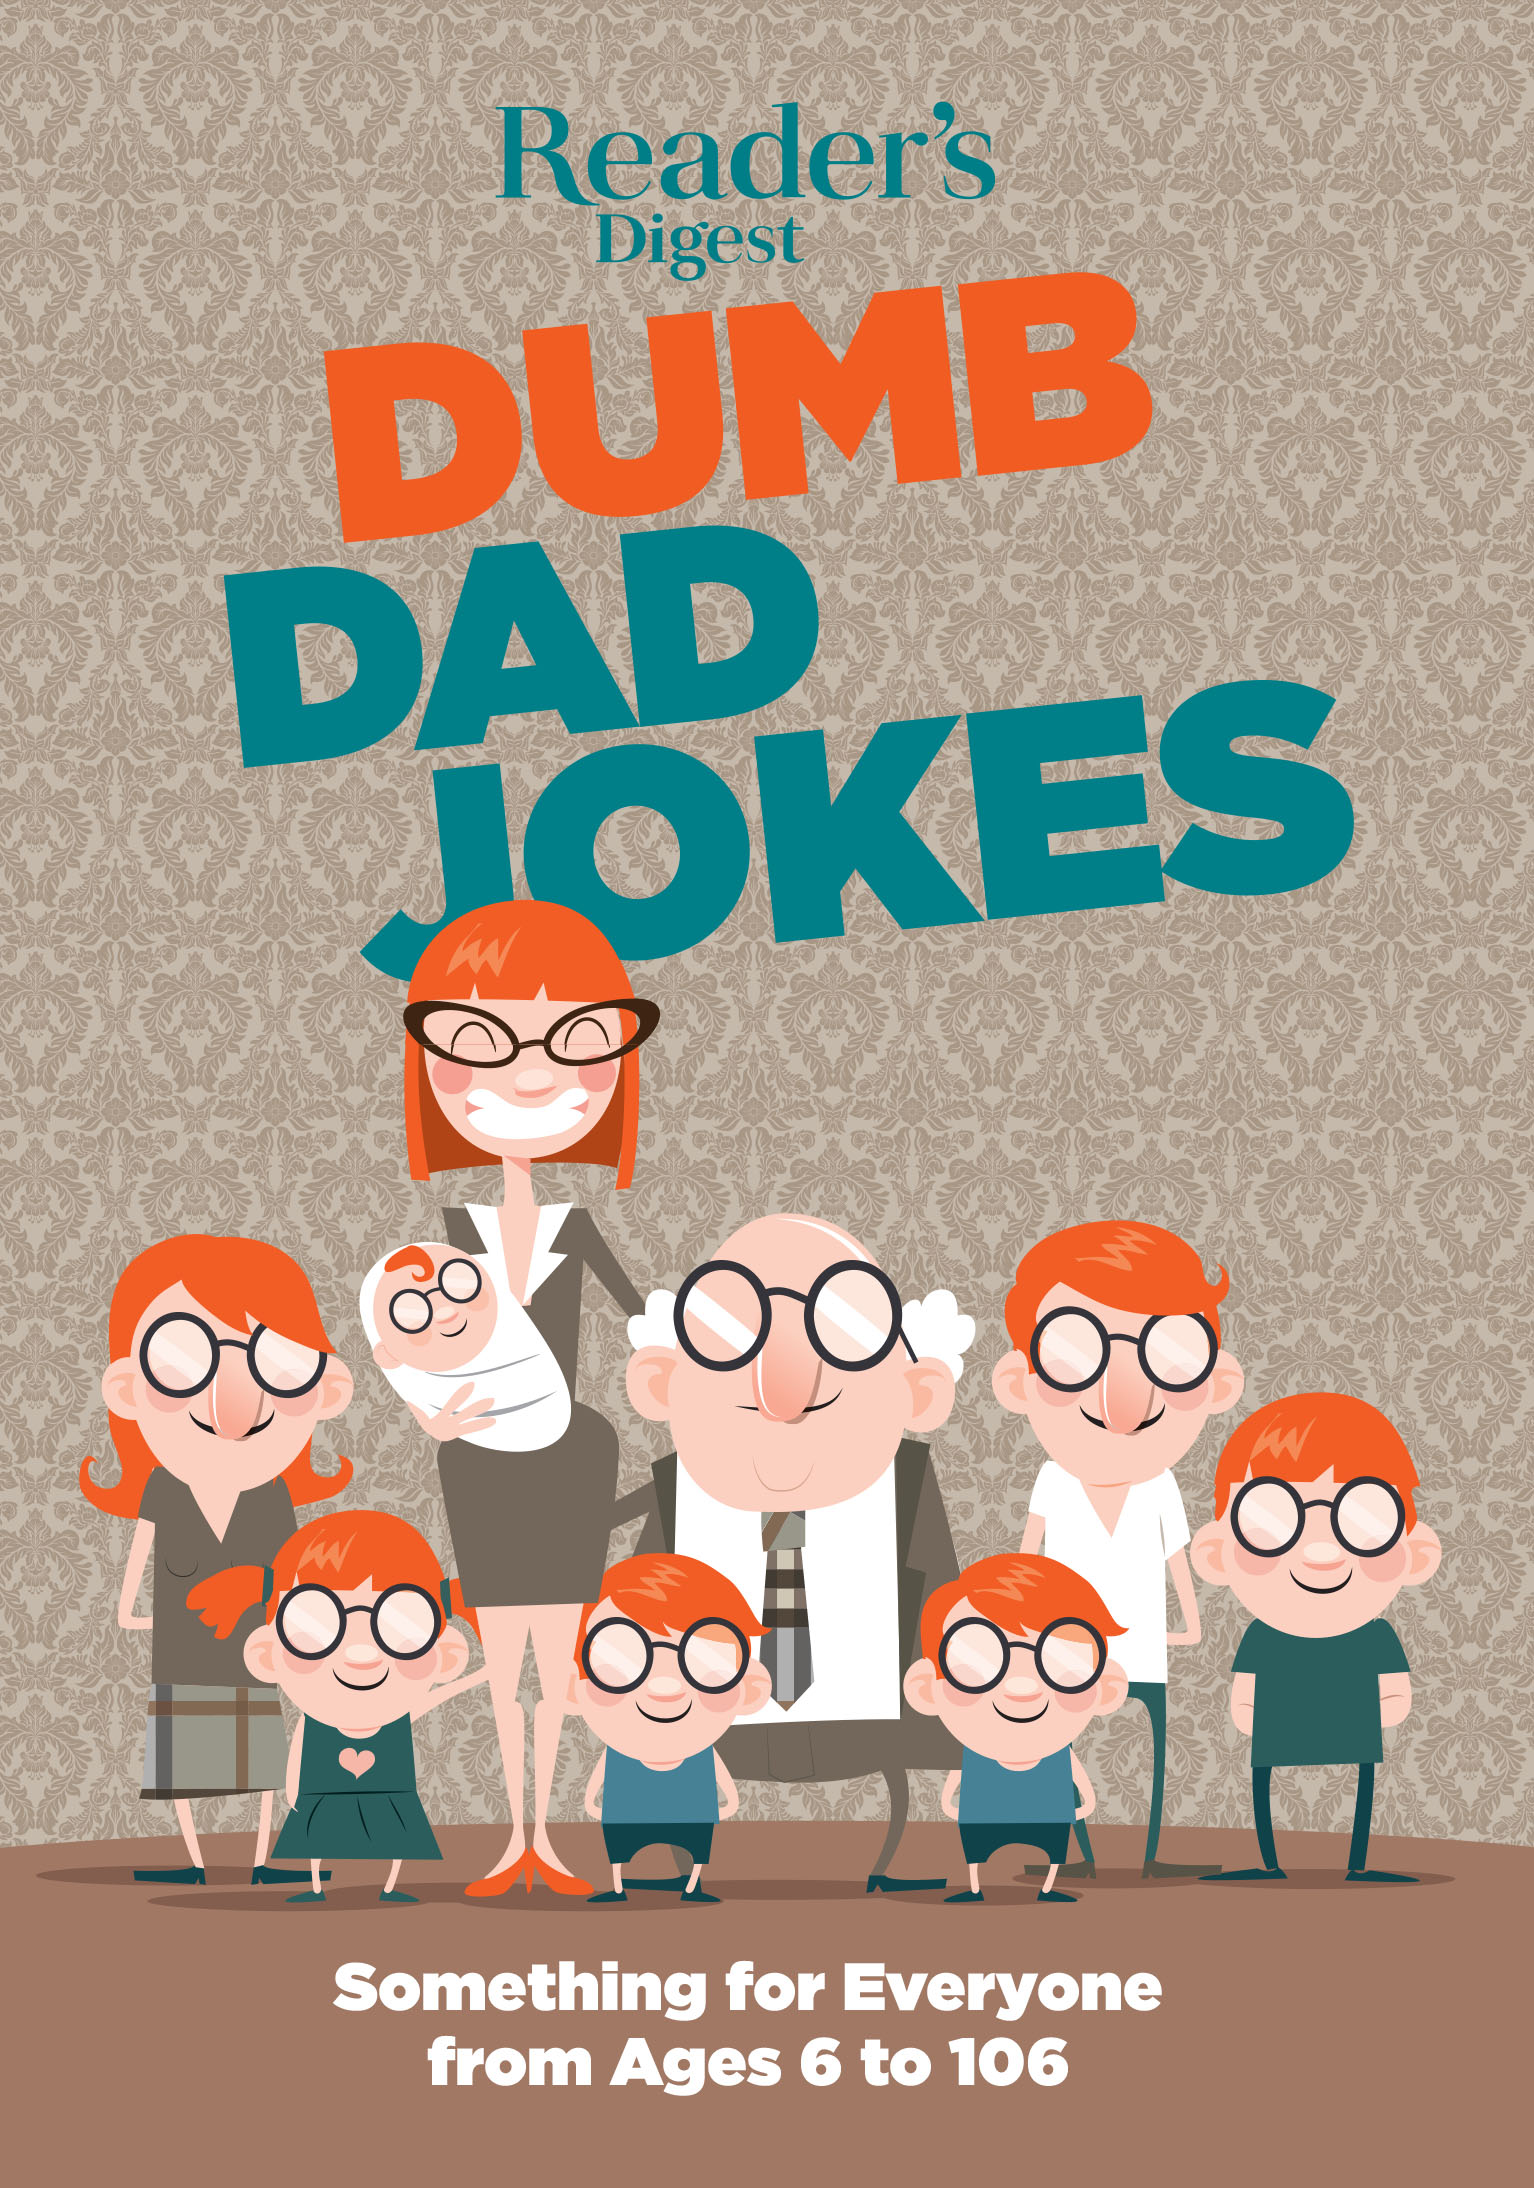 Reader’s Digest Dumb Dad Jokes Reader's Digest